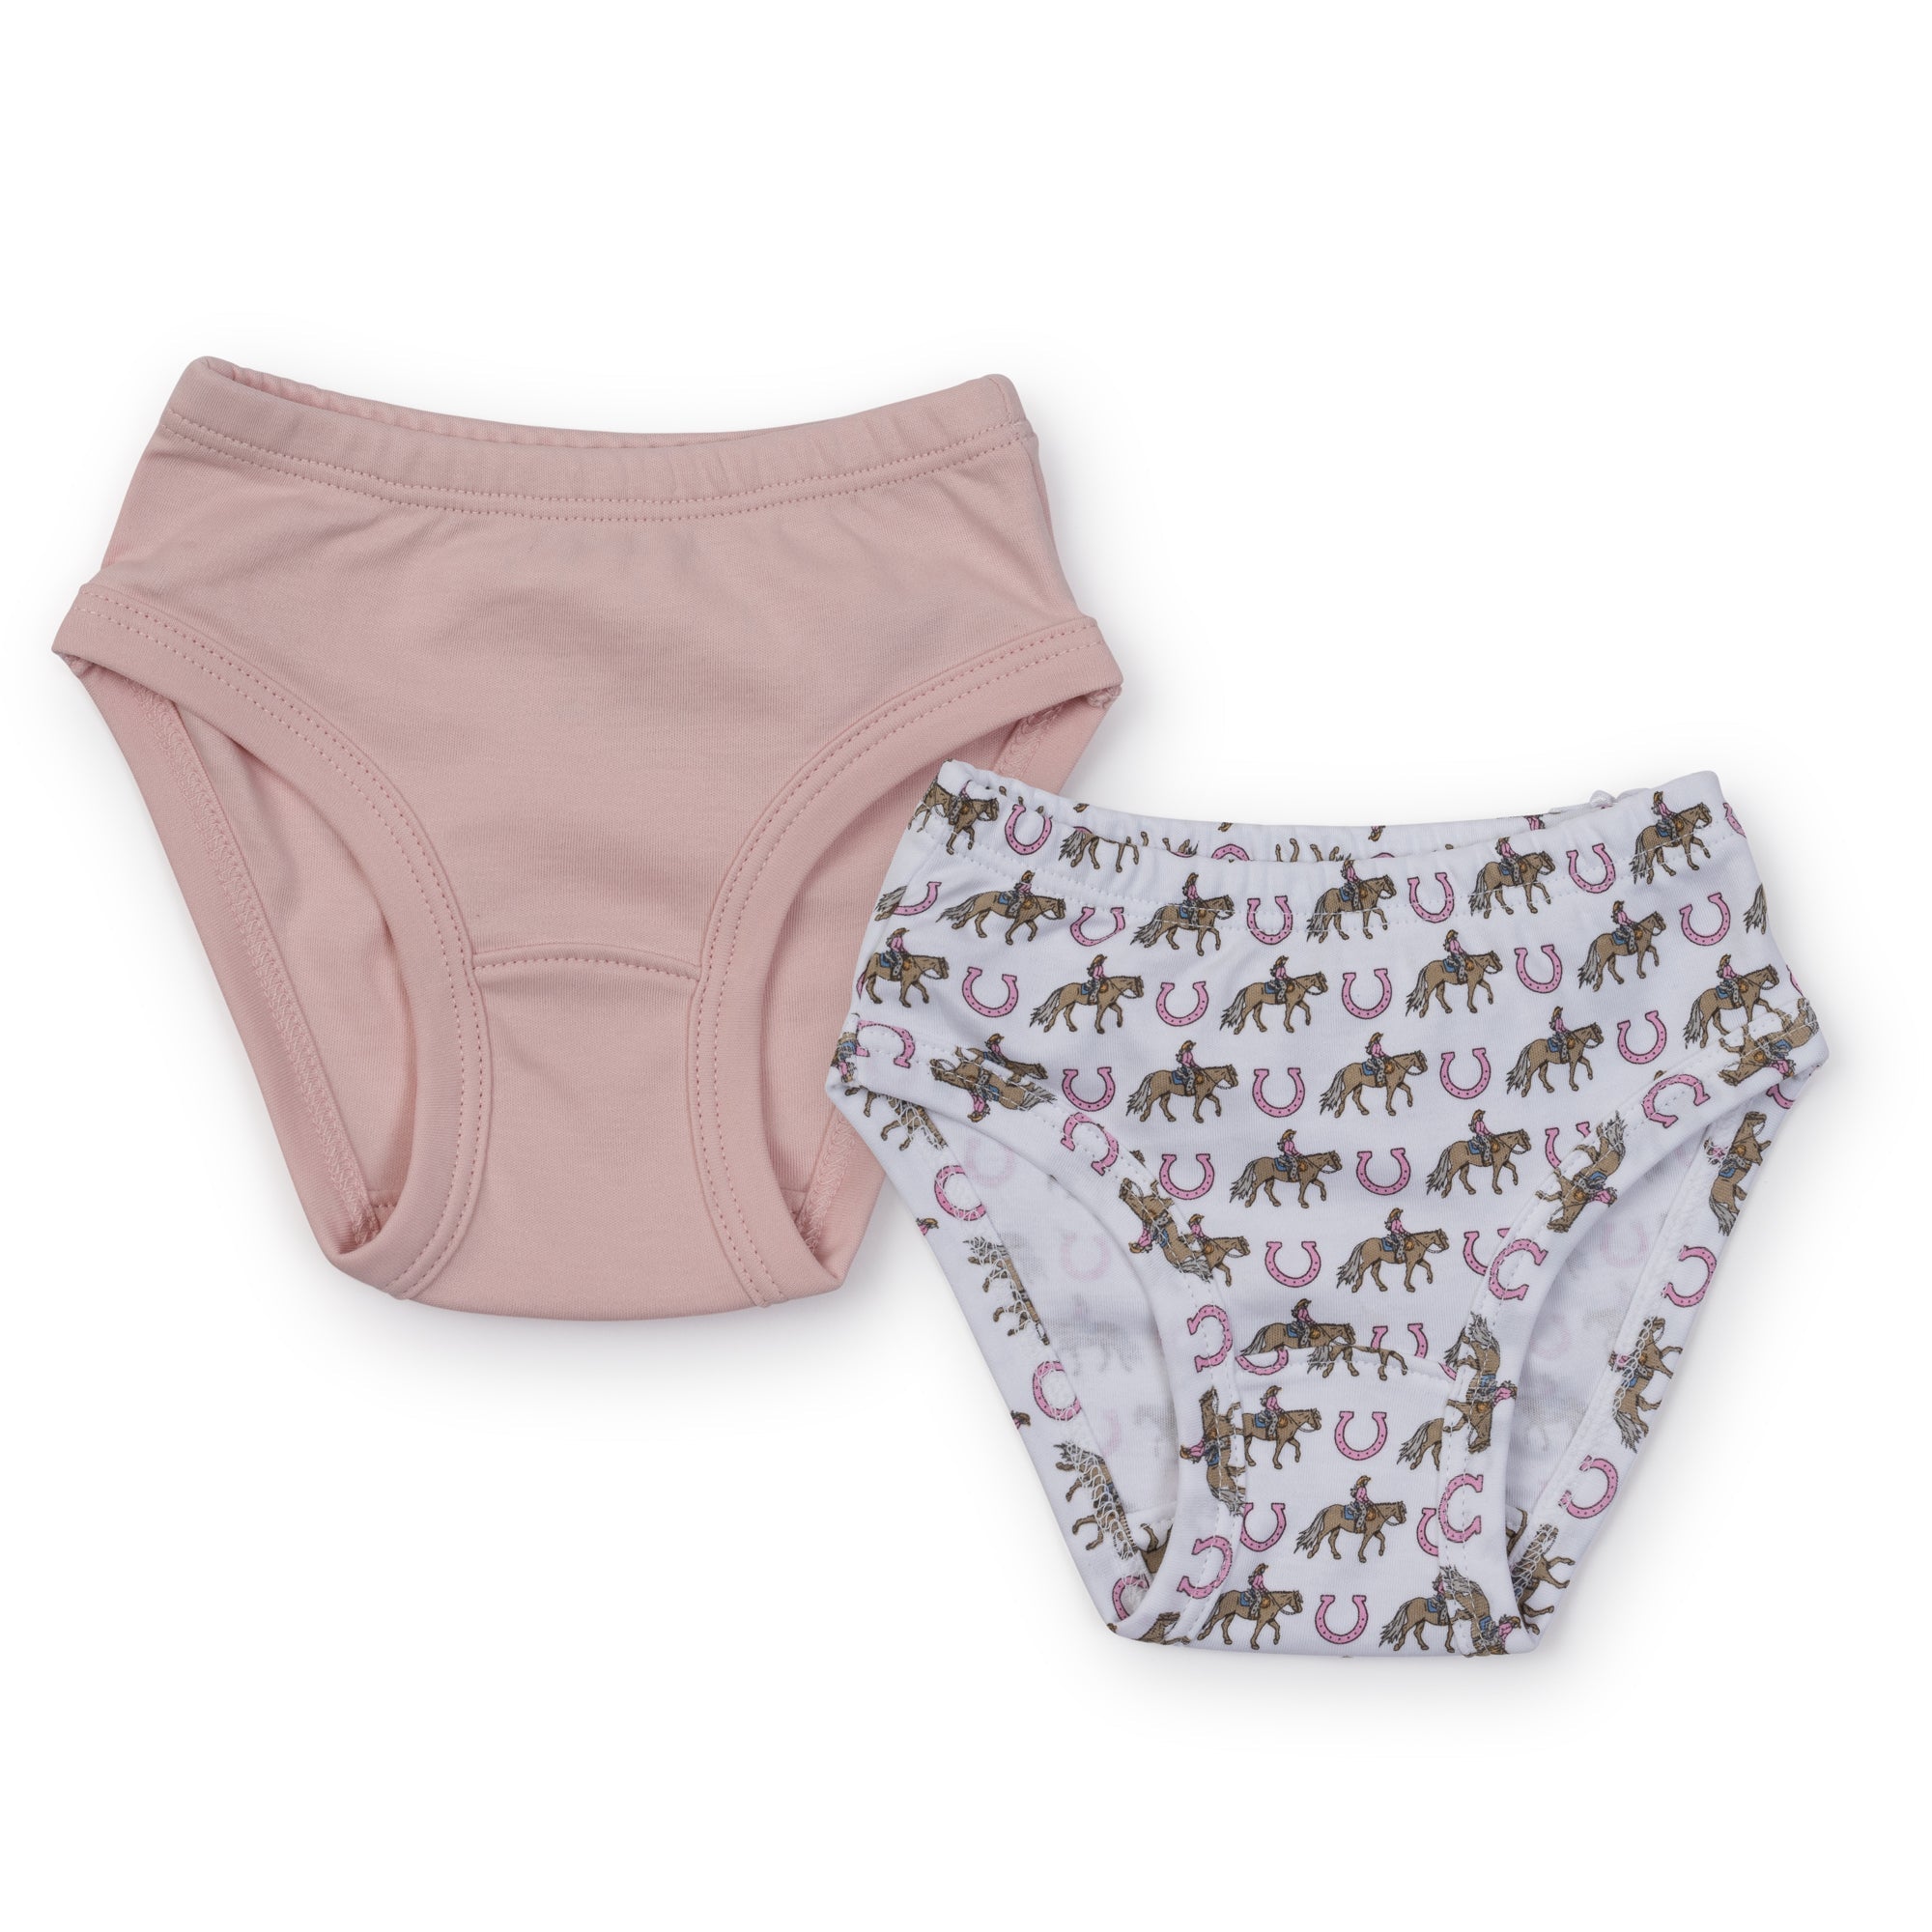 Lauren Girls' Pima Cotton Underwear Set - Rodeo Cowgirl/Light Pink - HoneyBug 